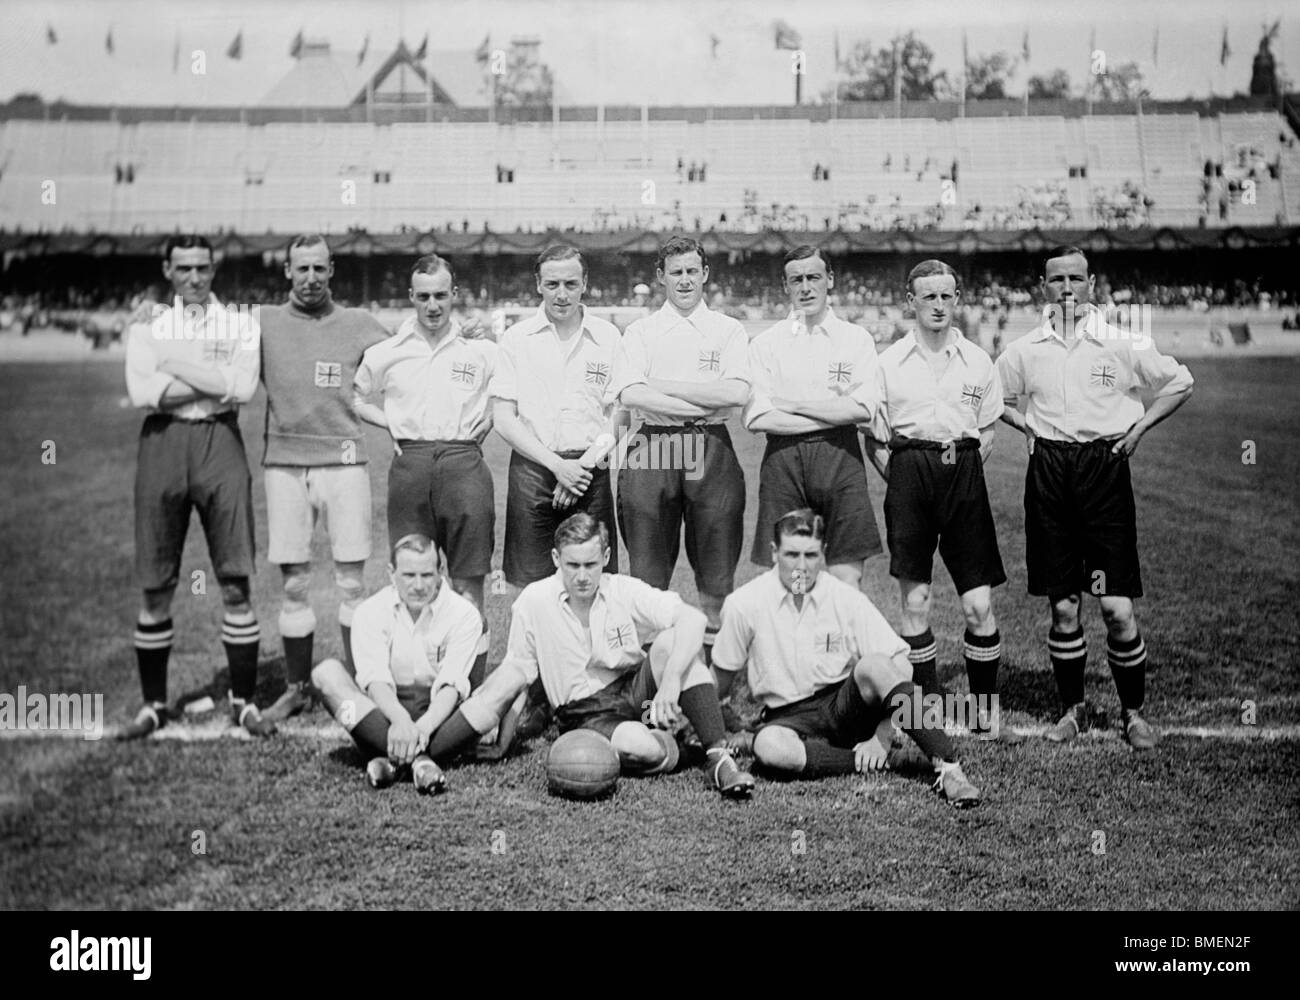 Foto d'epoca dell'Inghilterra / Gran Bretagna squadra di calcio che ha vinto la medaglia d'oro alle Olimpiadi del 1912 a Stoccolma, Svezia. Foto Stock